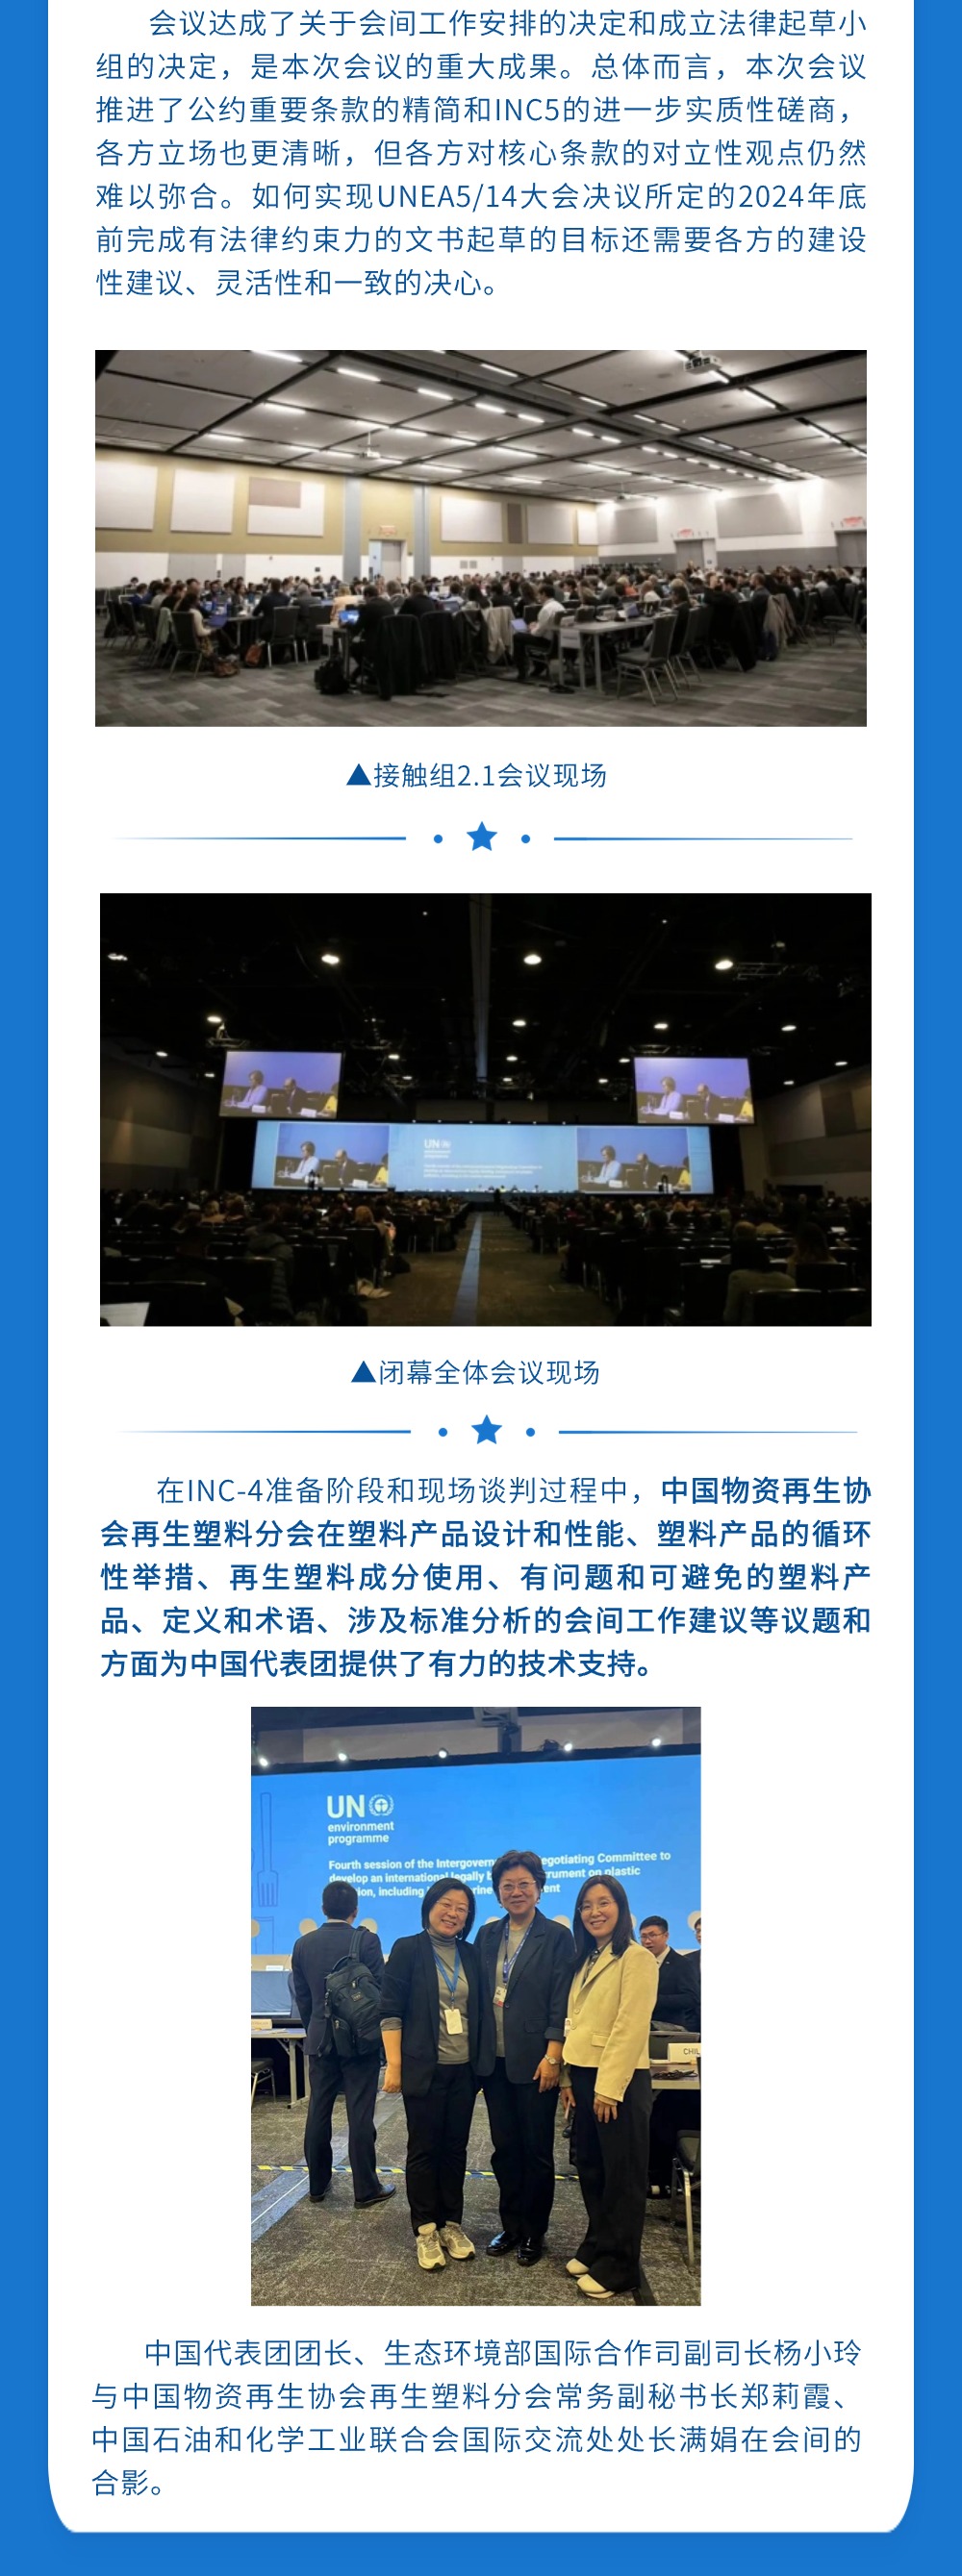 融媒体政务工作会议排版文章长图 (1).jpg